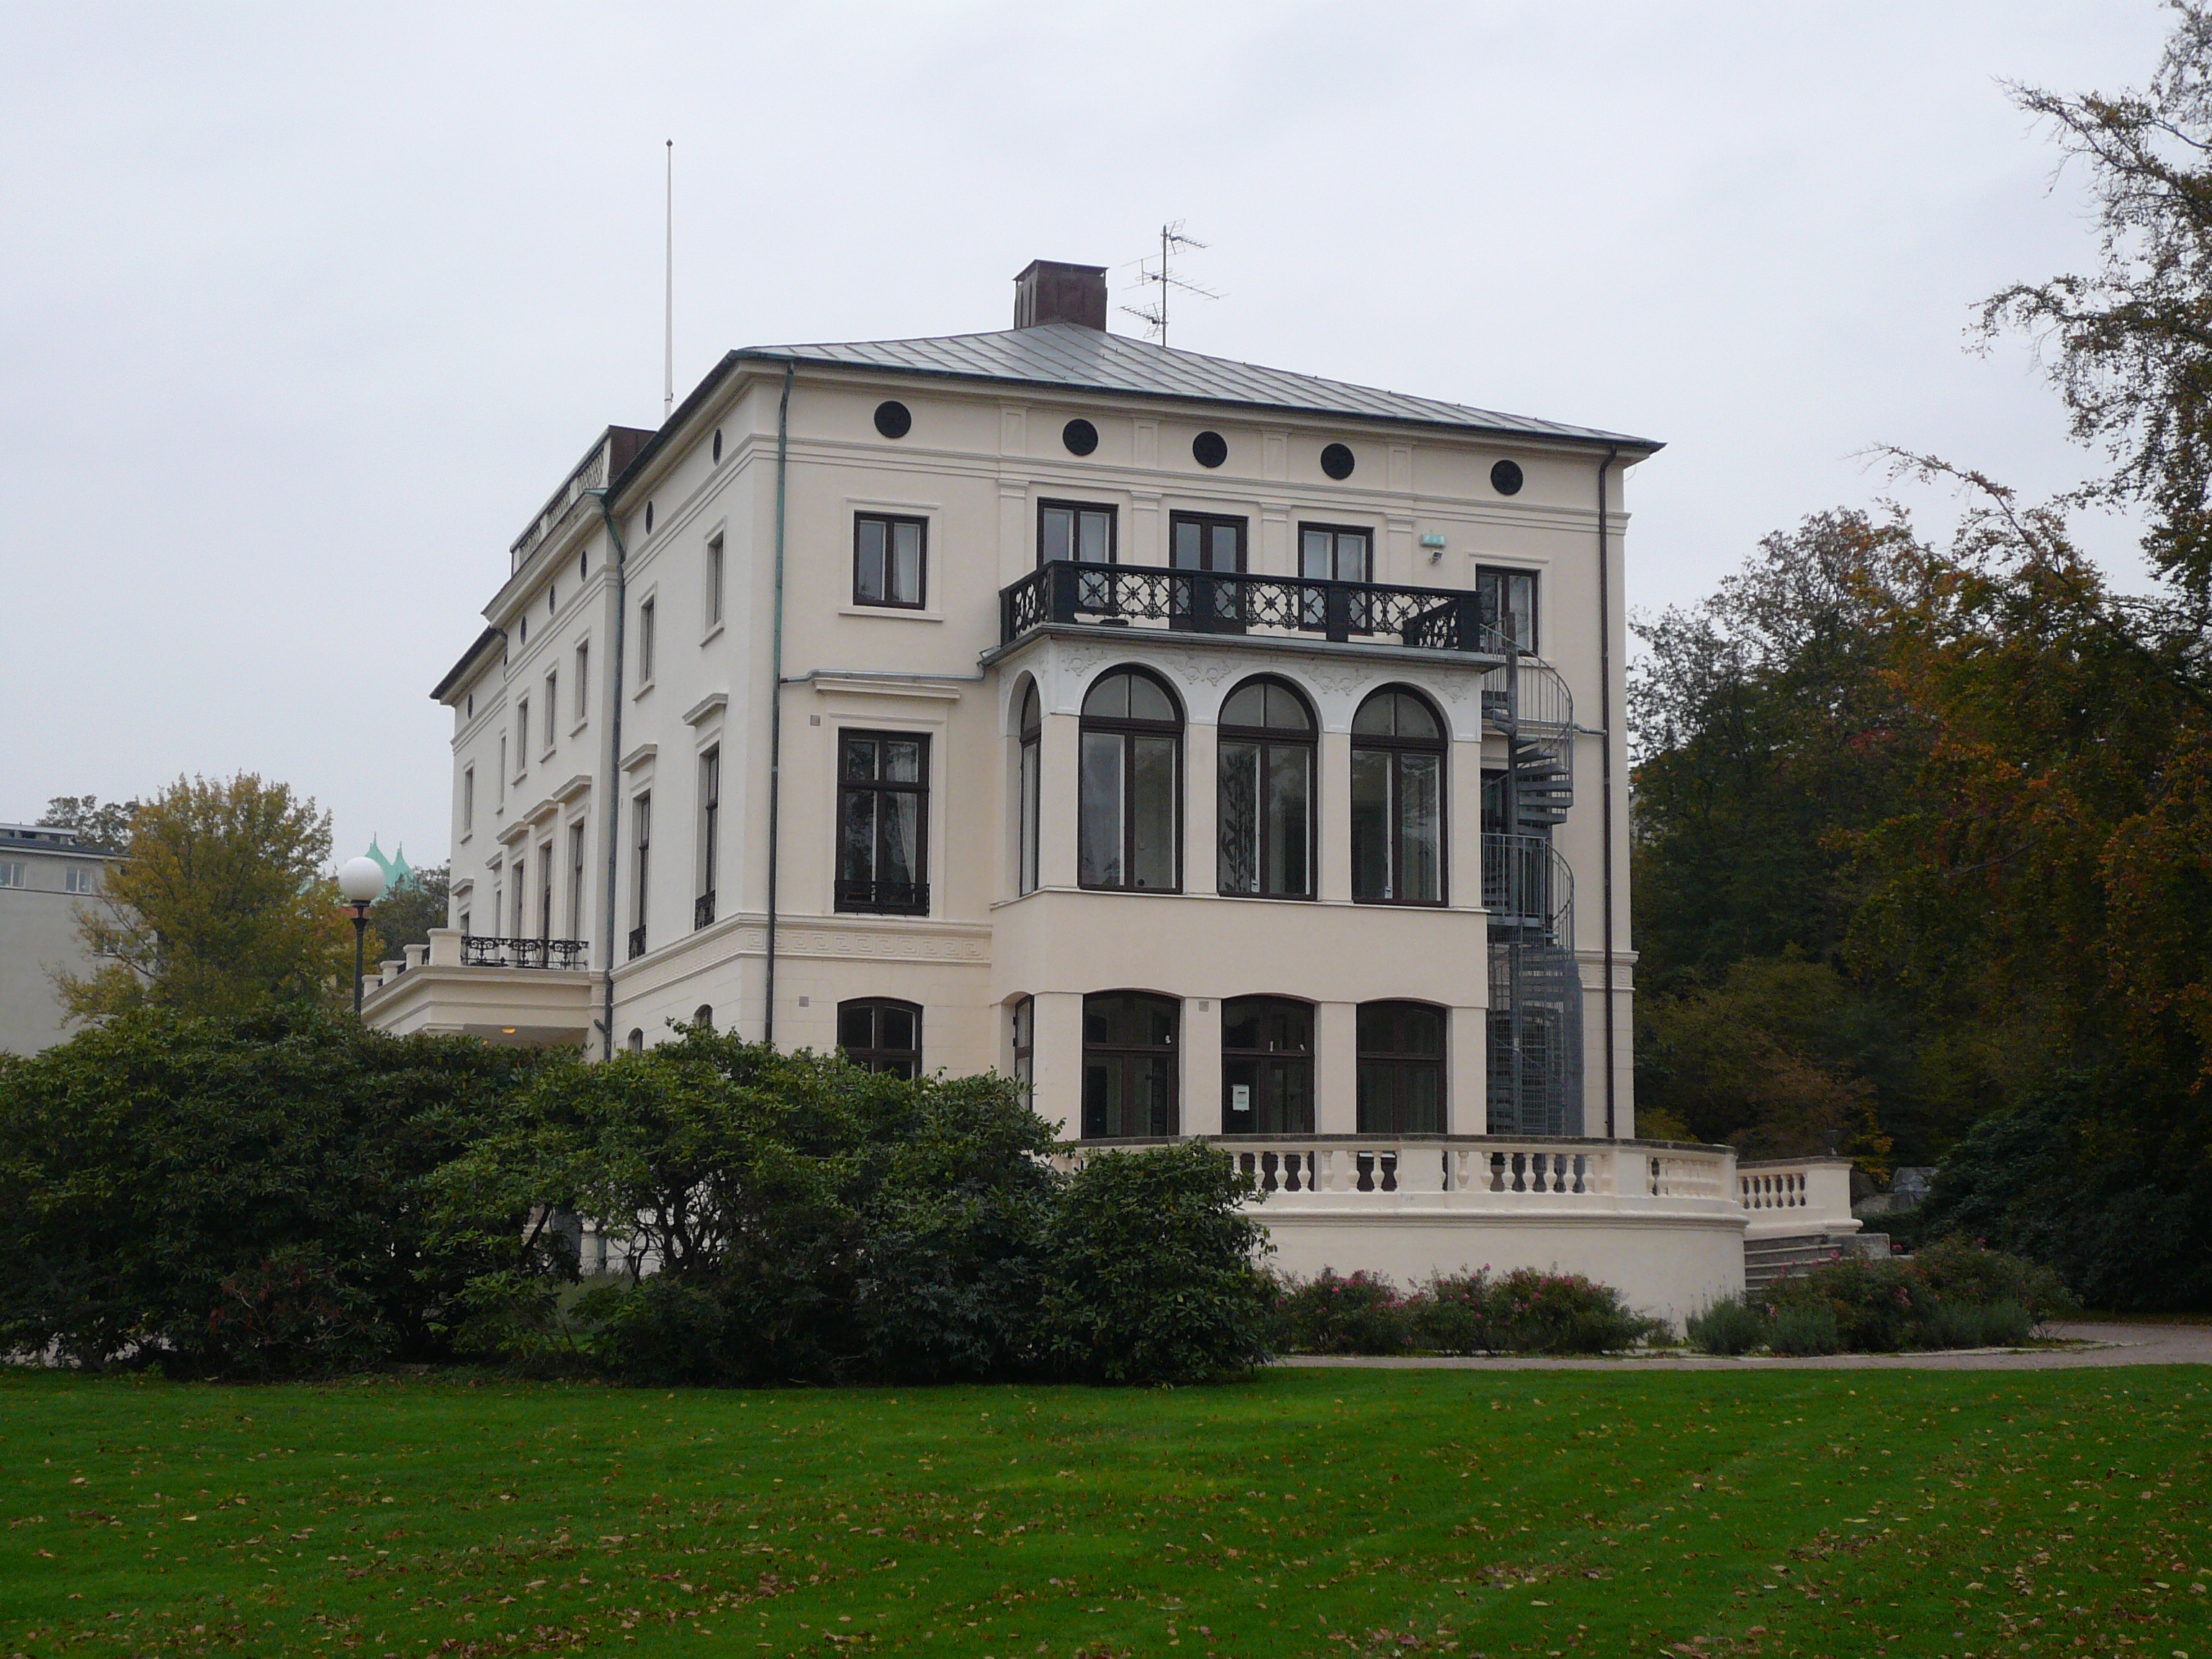 Konsul Perssons villa (Essenska villan), Helsingborg, från sydväst.